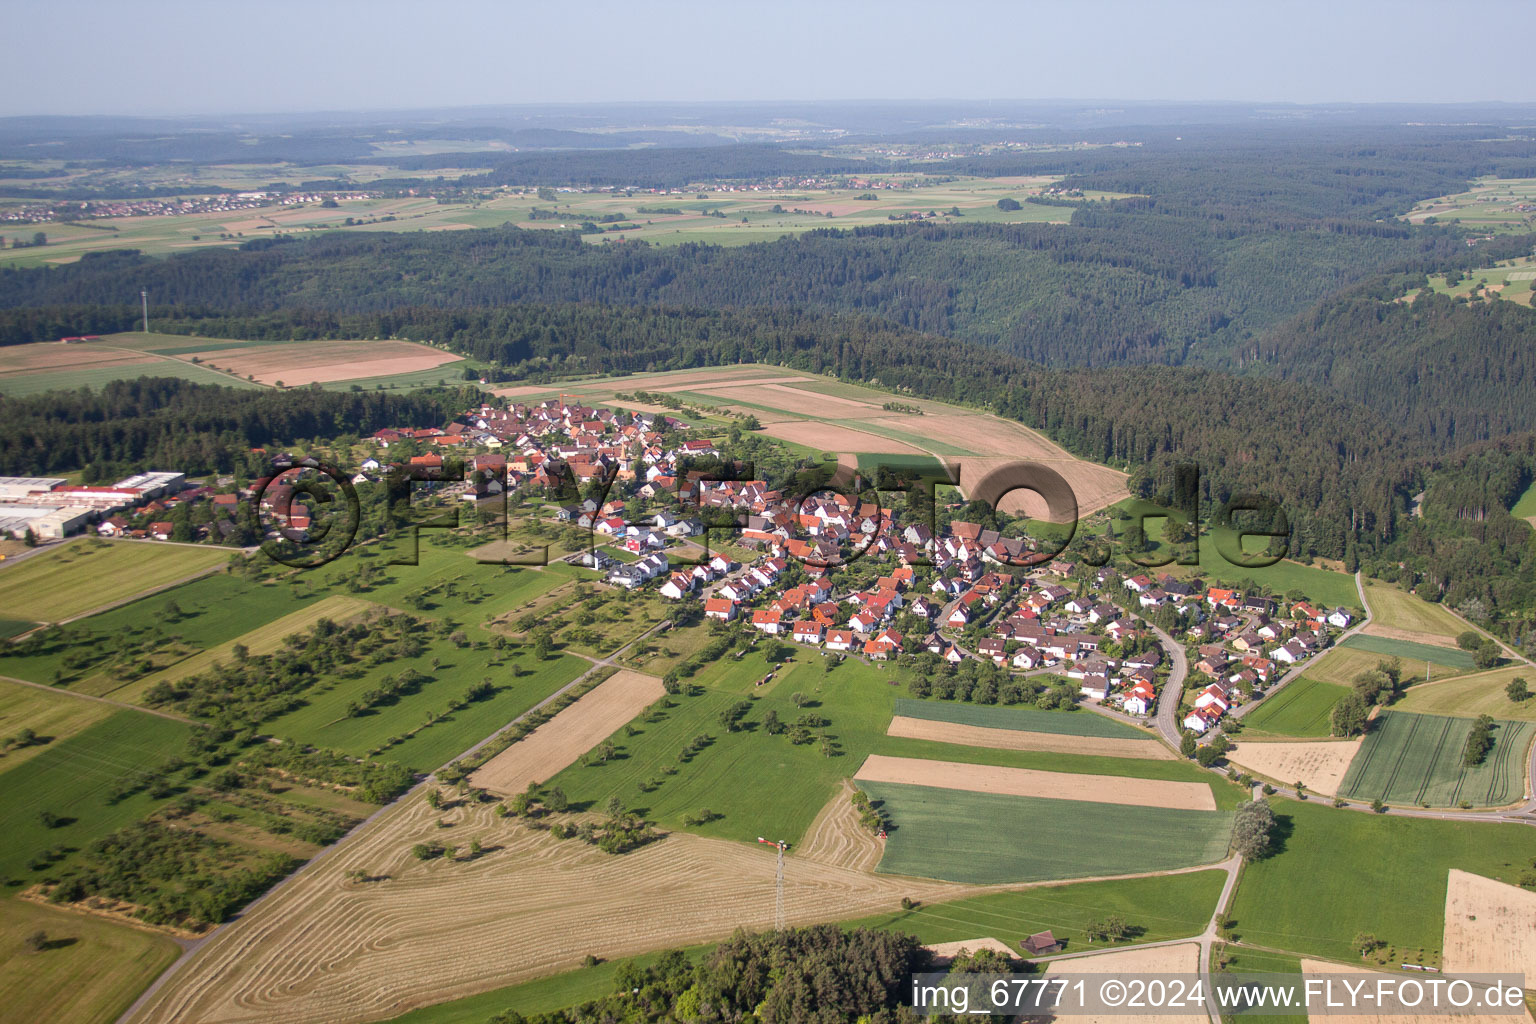 Vue aérienne de Calw à Gültlingen dans le département Bade-Wurtemberg, Allemagne